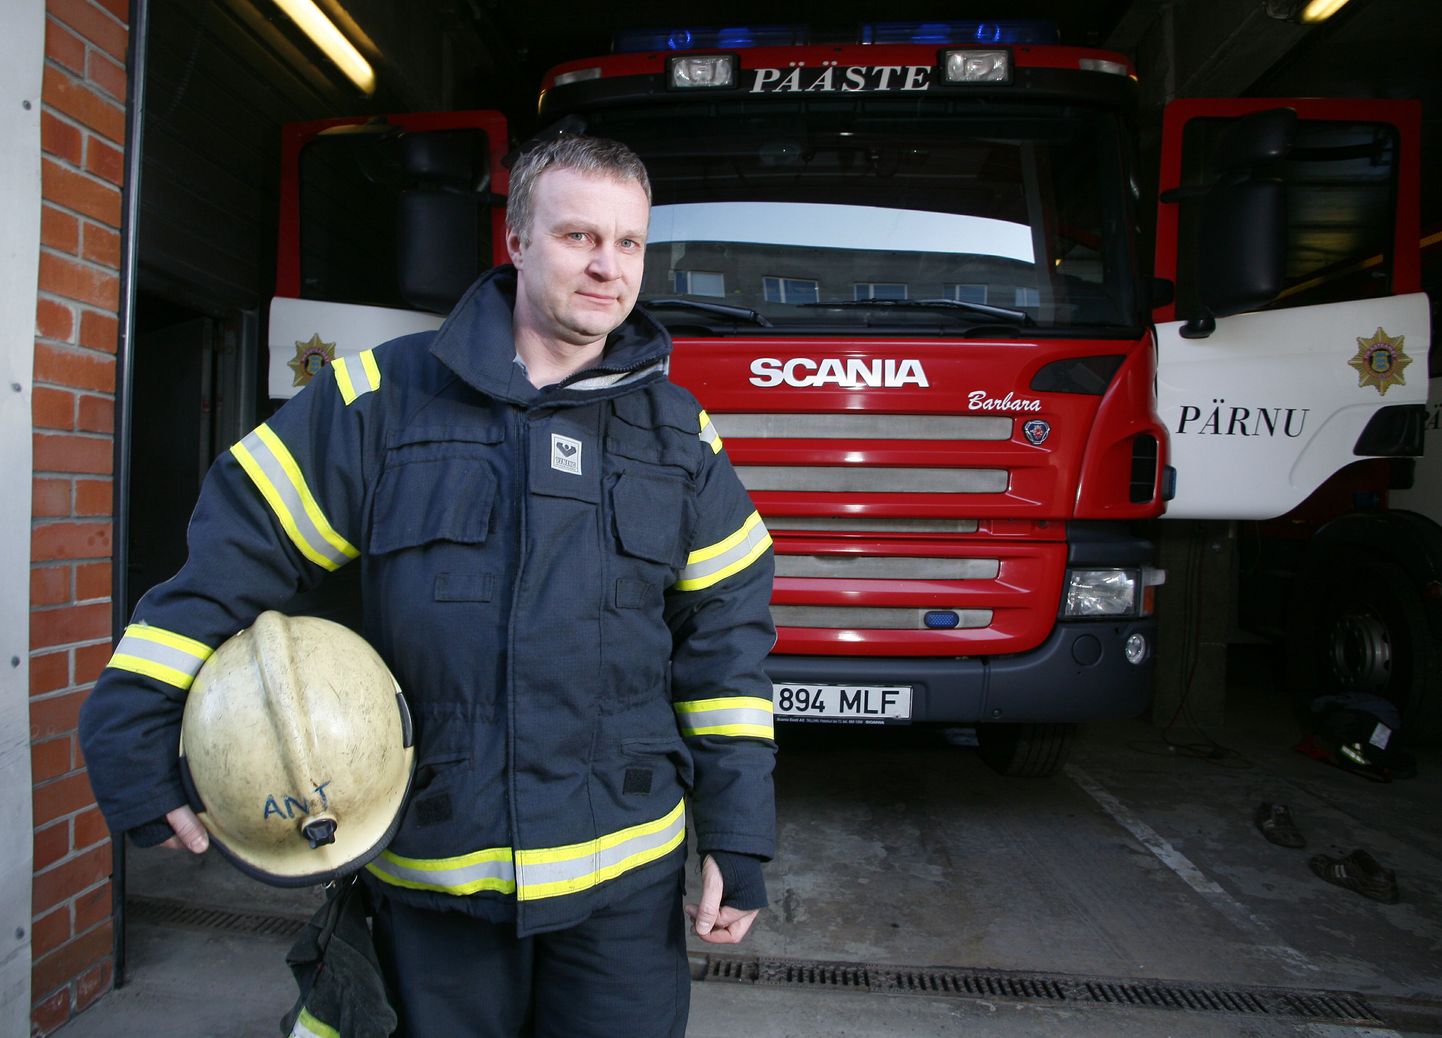 Paarkümmend aastat tuletõrjuja leiba söönud Antti Lääts soovib fondi kaudu toetada ka kolleegide ja päästeala töötajate lapsi, kes on sattunud majanduslikku kitsikusse või on neil erivajadusi.